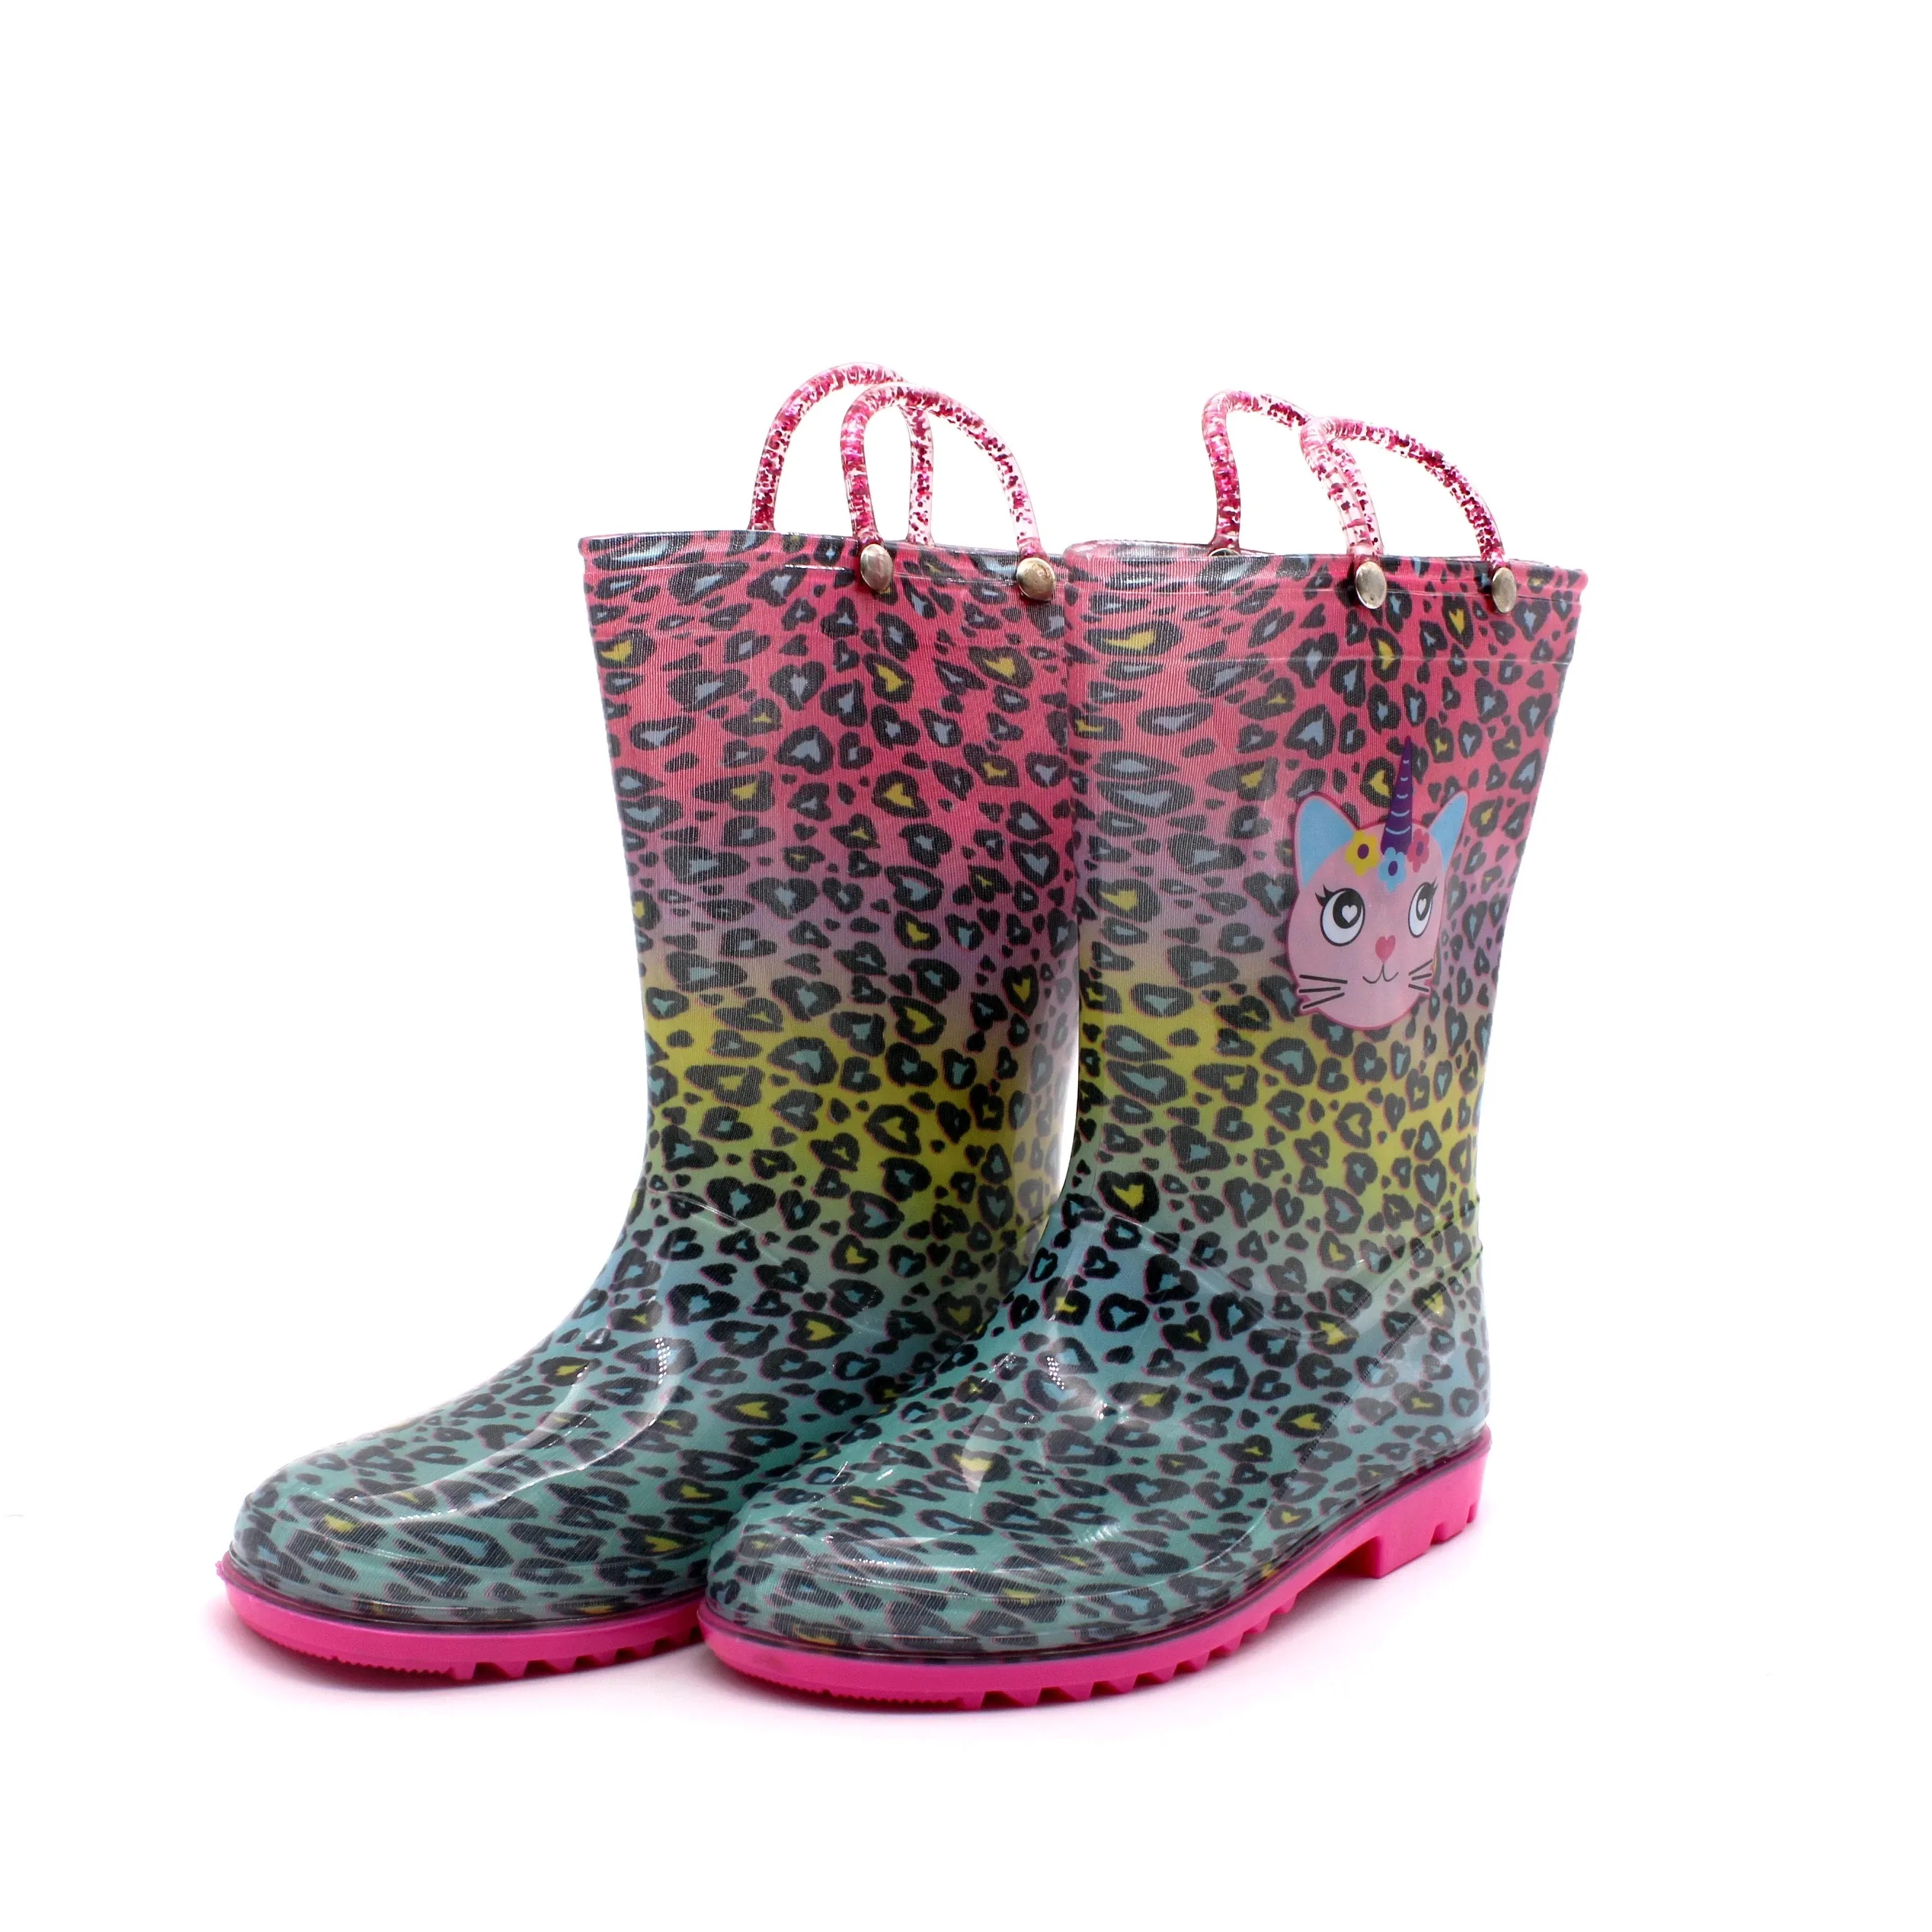 Botas de chuva para crianças em pvc, botas infantis personalizadas de cartoon com estampas de leopardo e meninas, botas de chuva à prova d'água